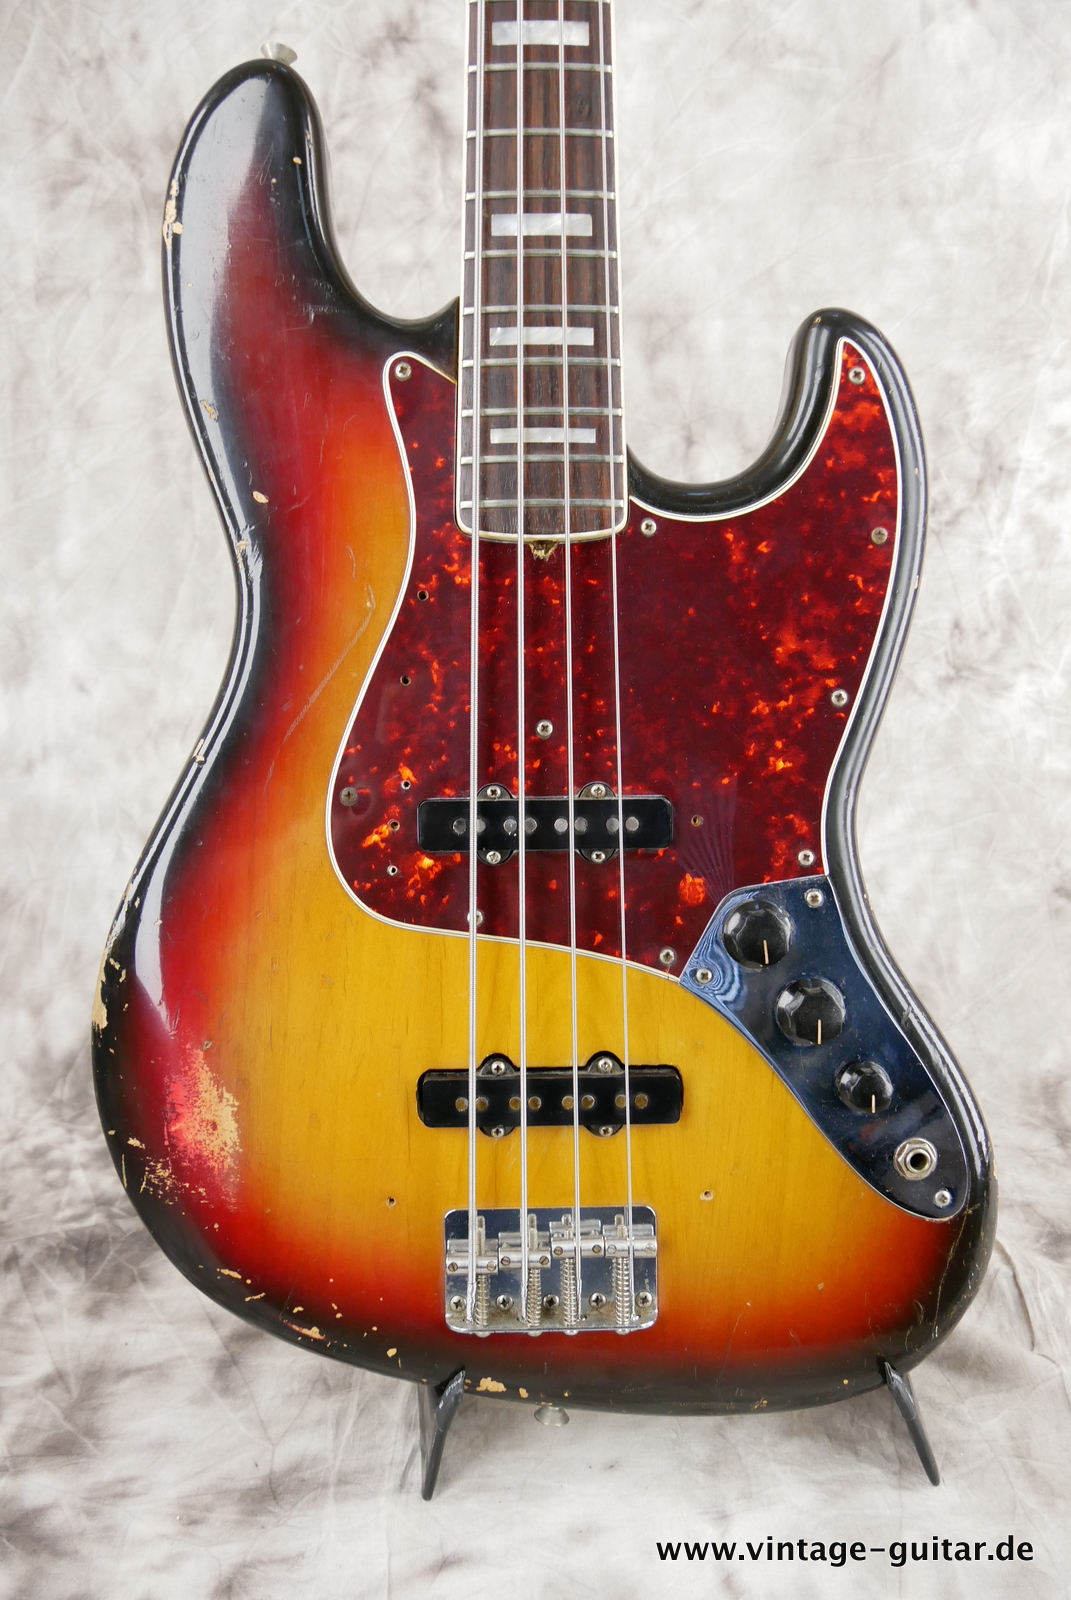 Fender-Jazz-Bass-alder-body-1974-sunburst-007.JPG